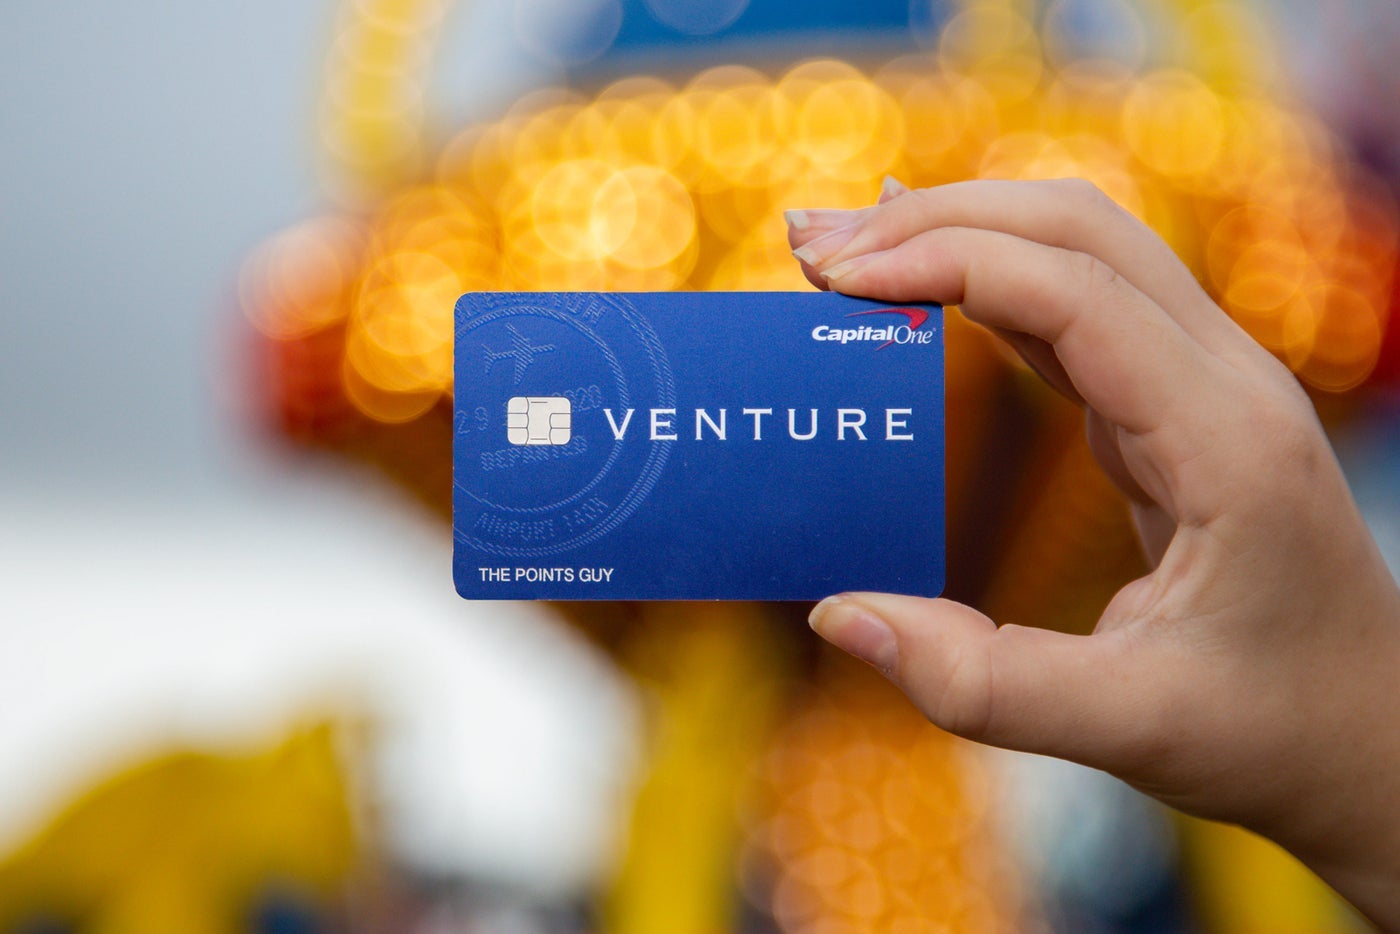 capital one venture travel rewards redemption